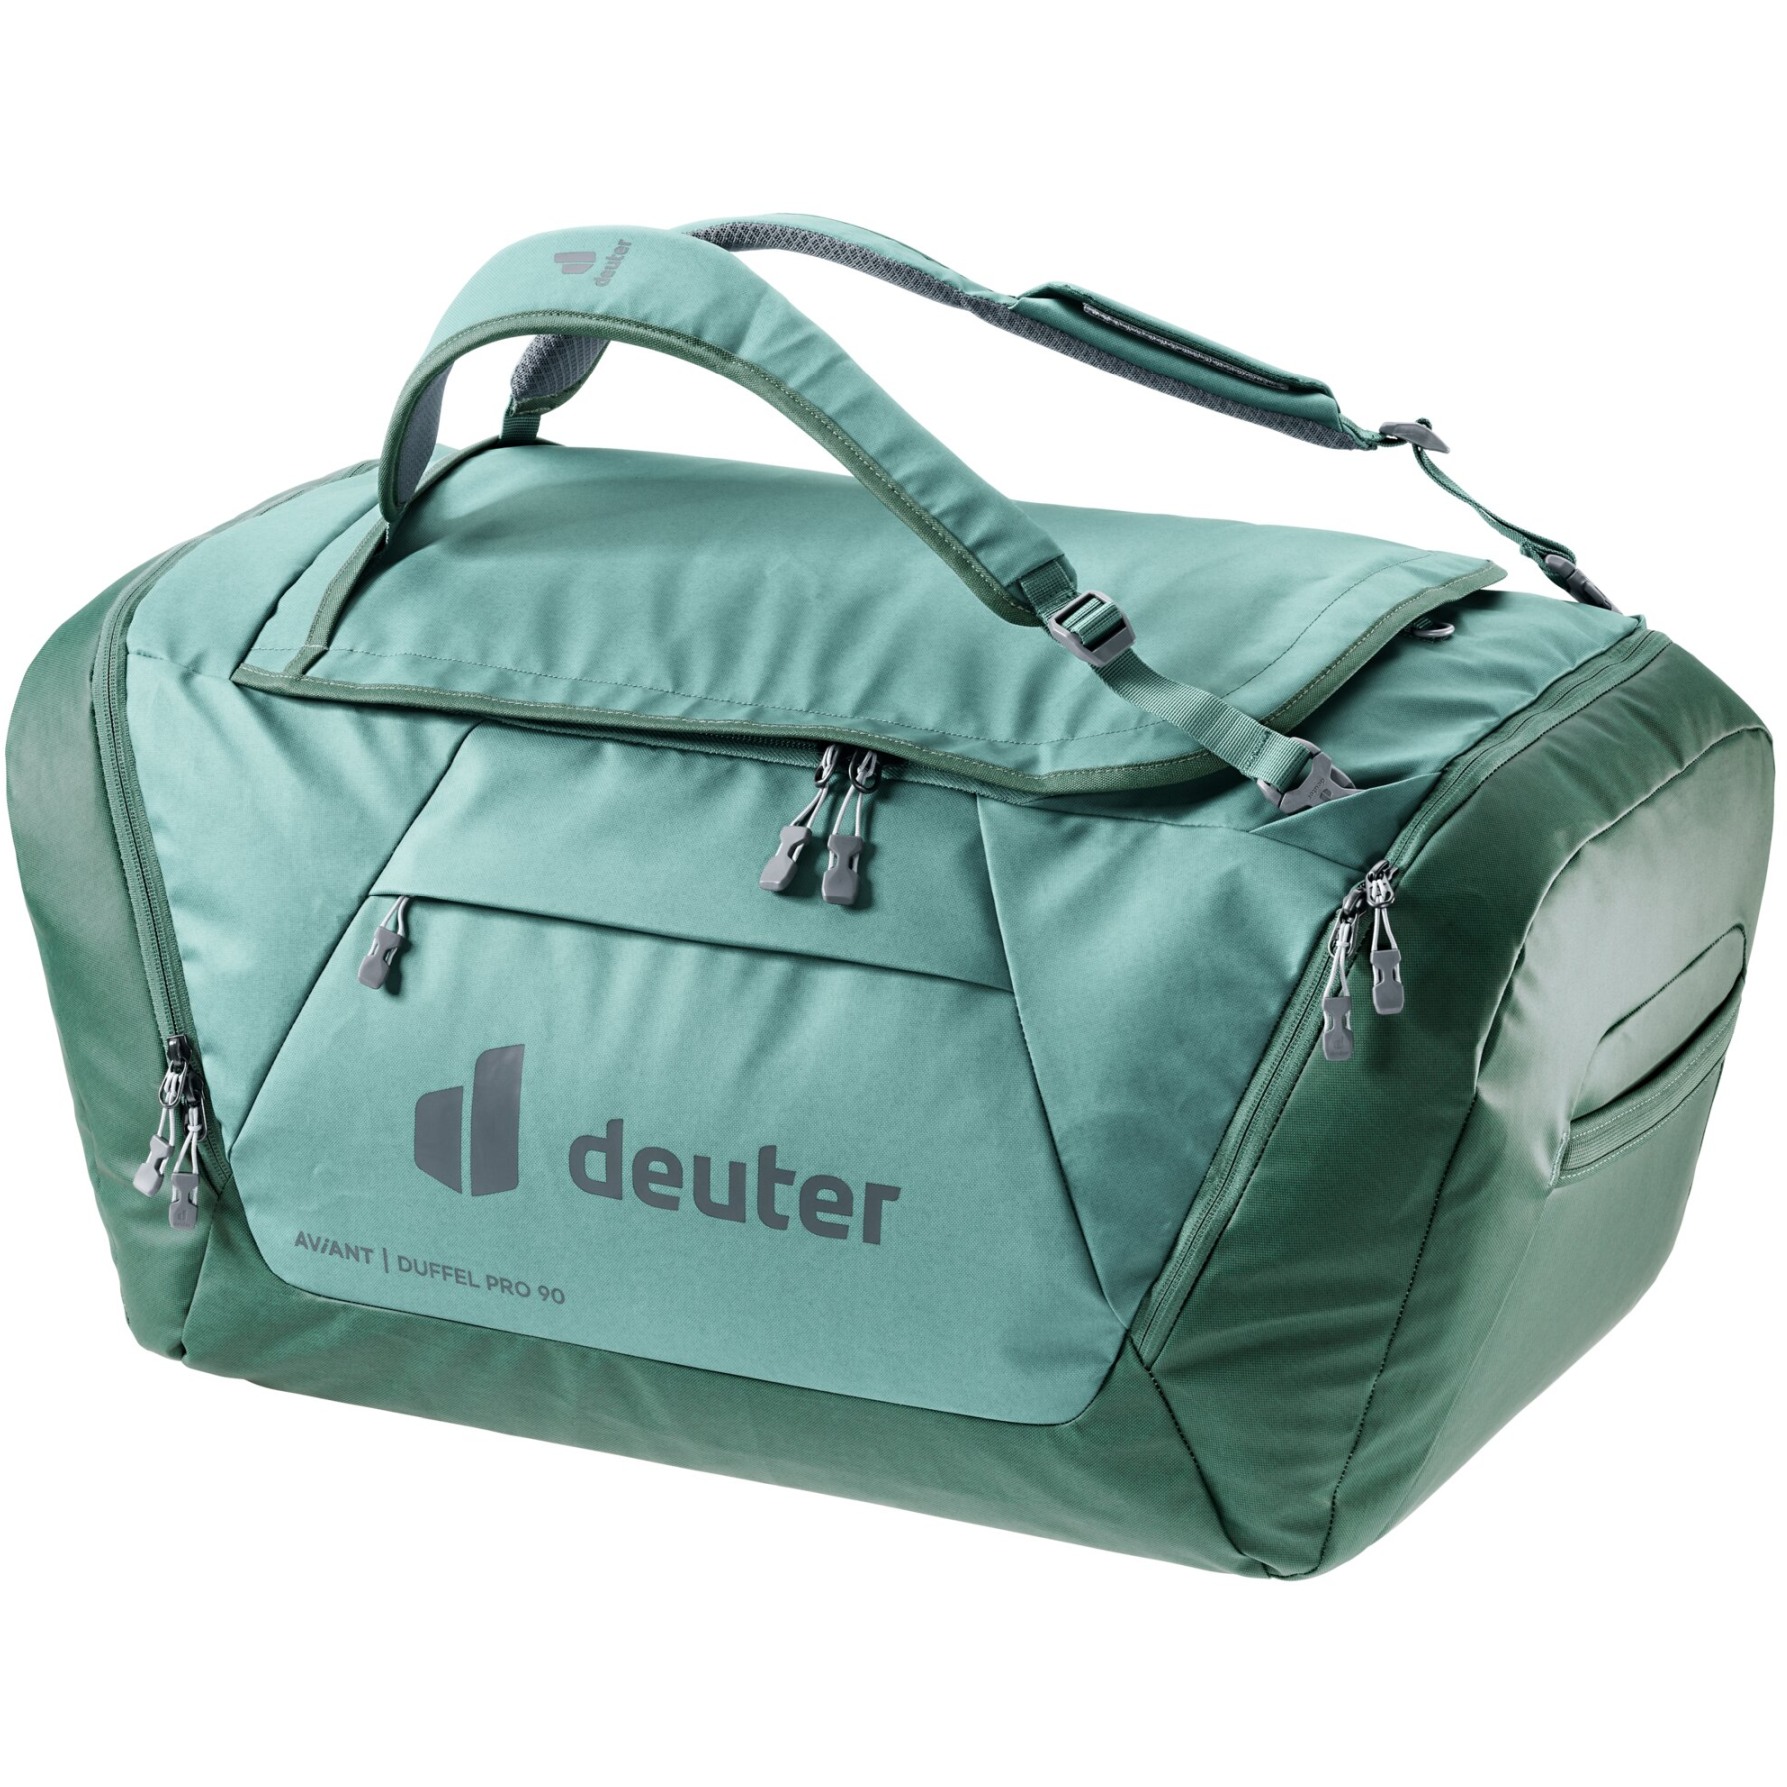 Produktbild von Deuter AViANT Duffel Pro 90 Reisetasche - jade-seagreen